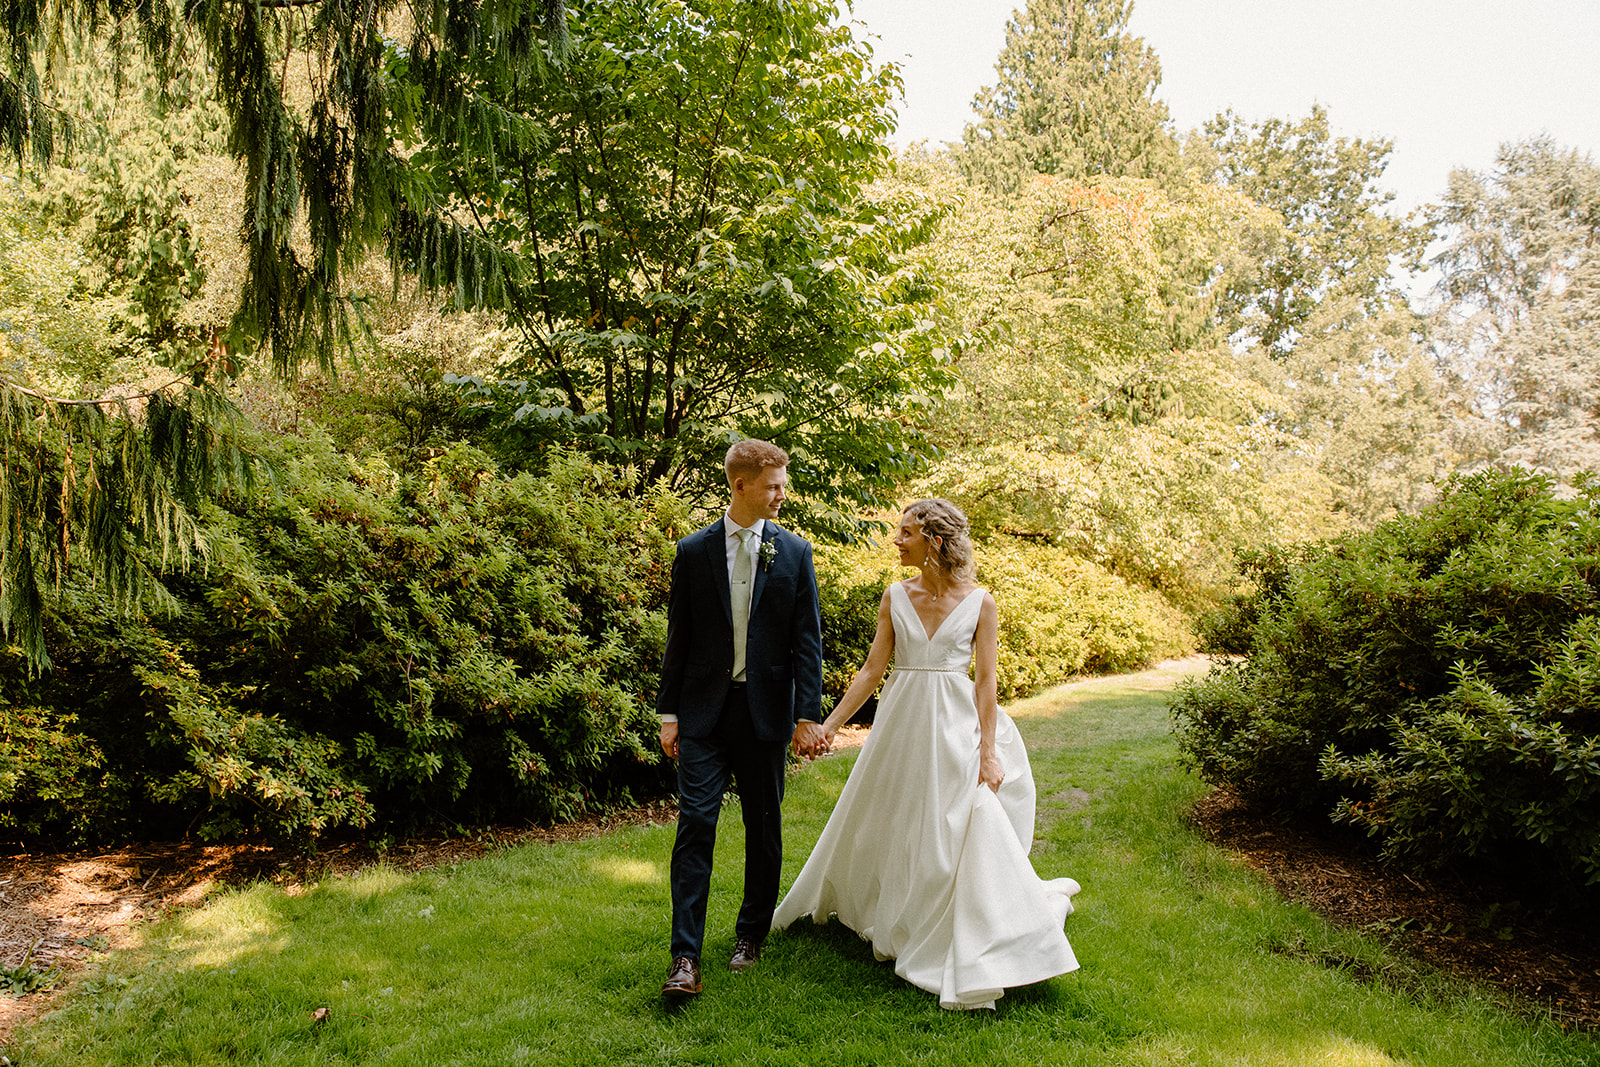 Seattle Washington wedding at Washington Park Arboretum